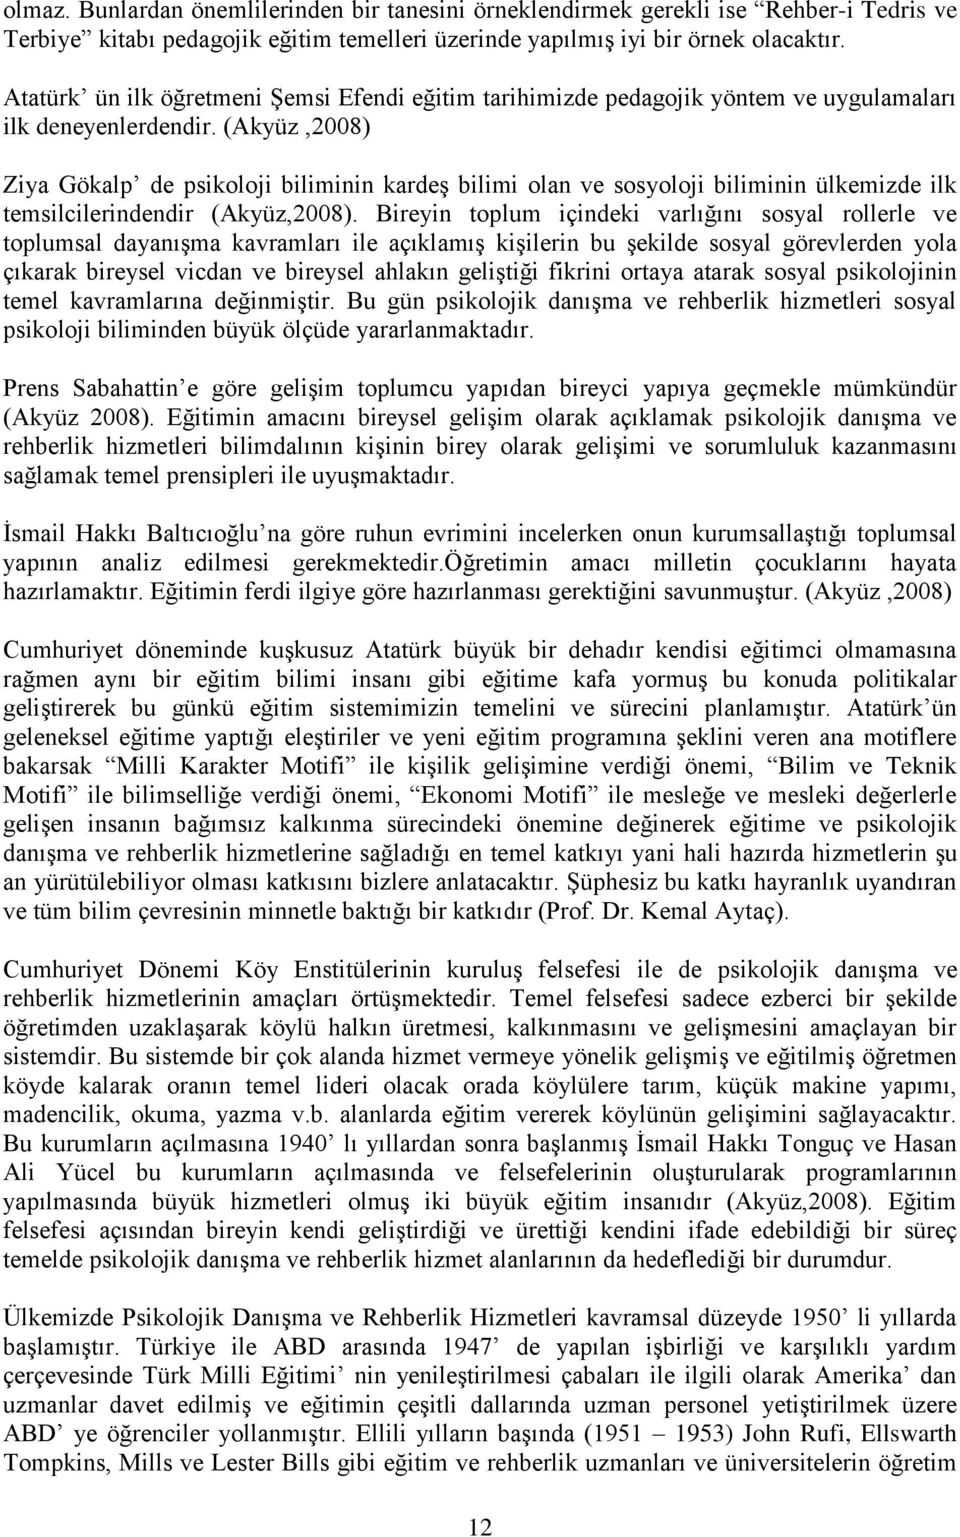 (Akyüz,2008) Ziya Gökalp de psikoloji biliminin kardeş bilimi olan ve sosyoloji biliminin ülkemizde ilk temsilcilerindendir (Akyüz,2008).